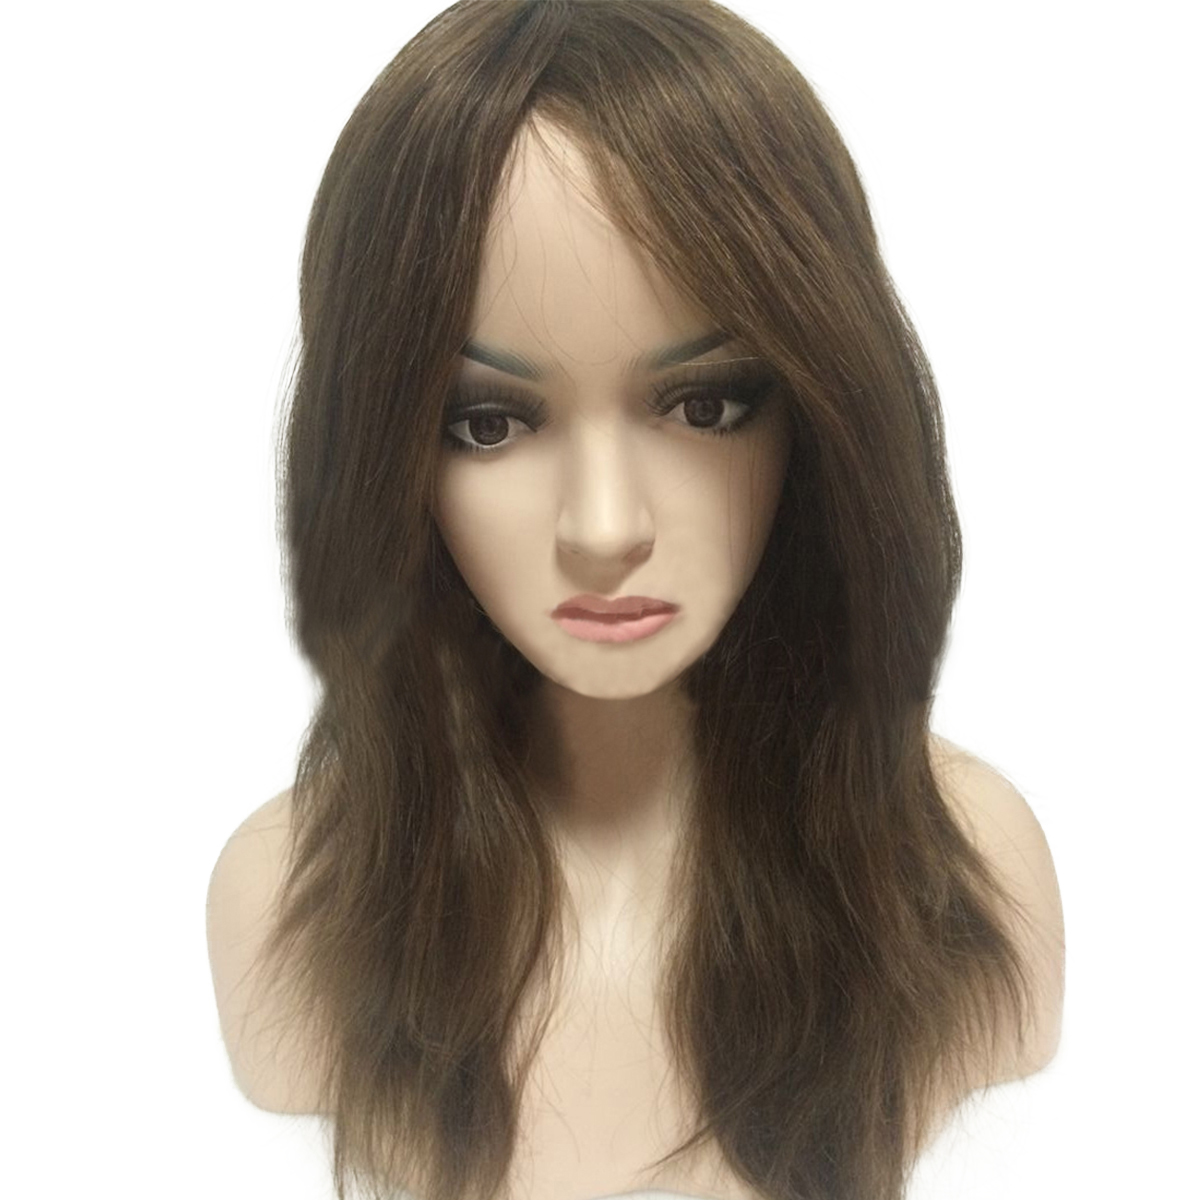 Sft-1332 full skin head capilar prosthesis long hair women wig